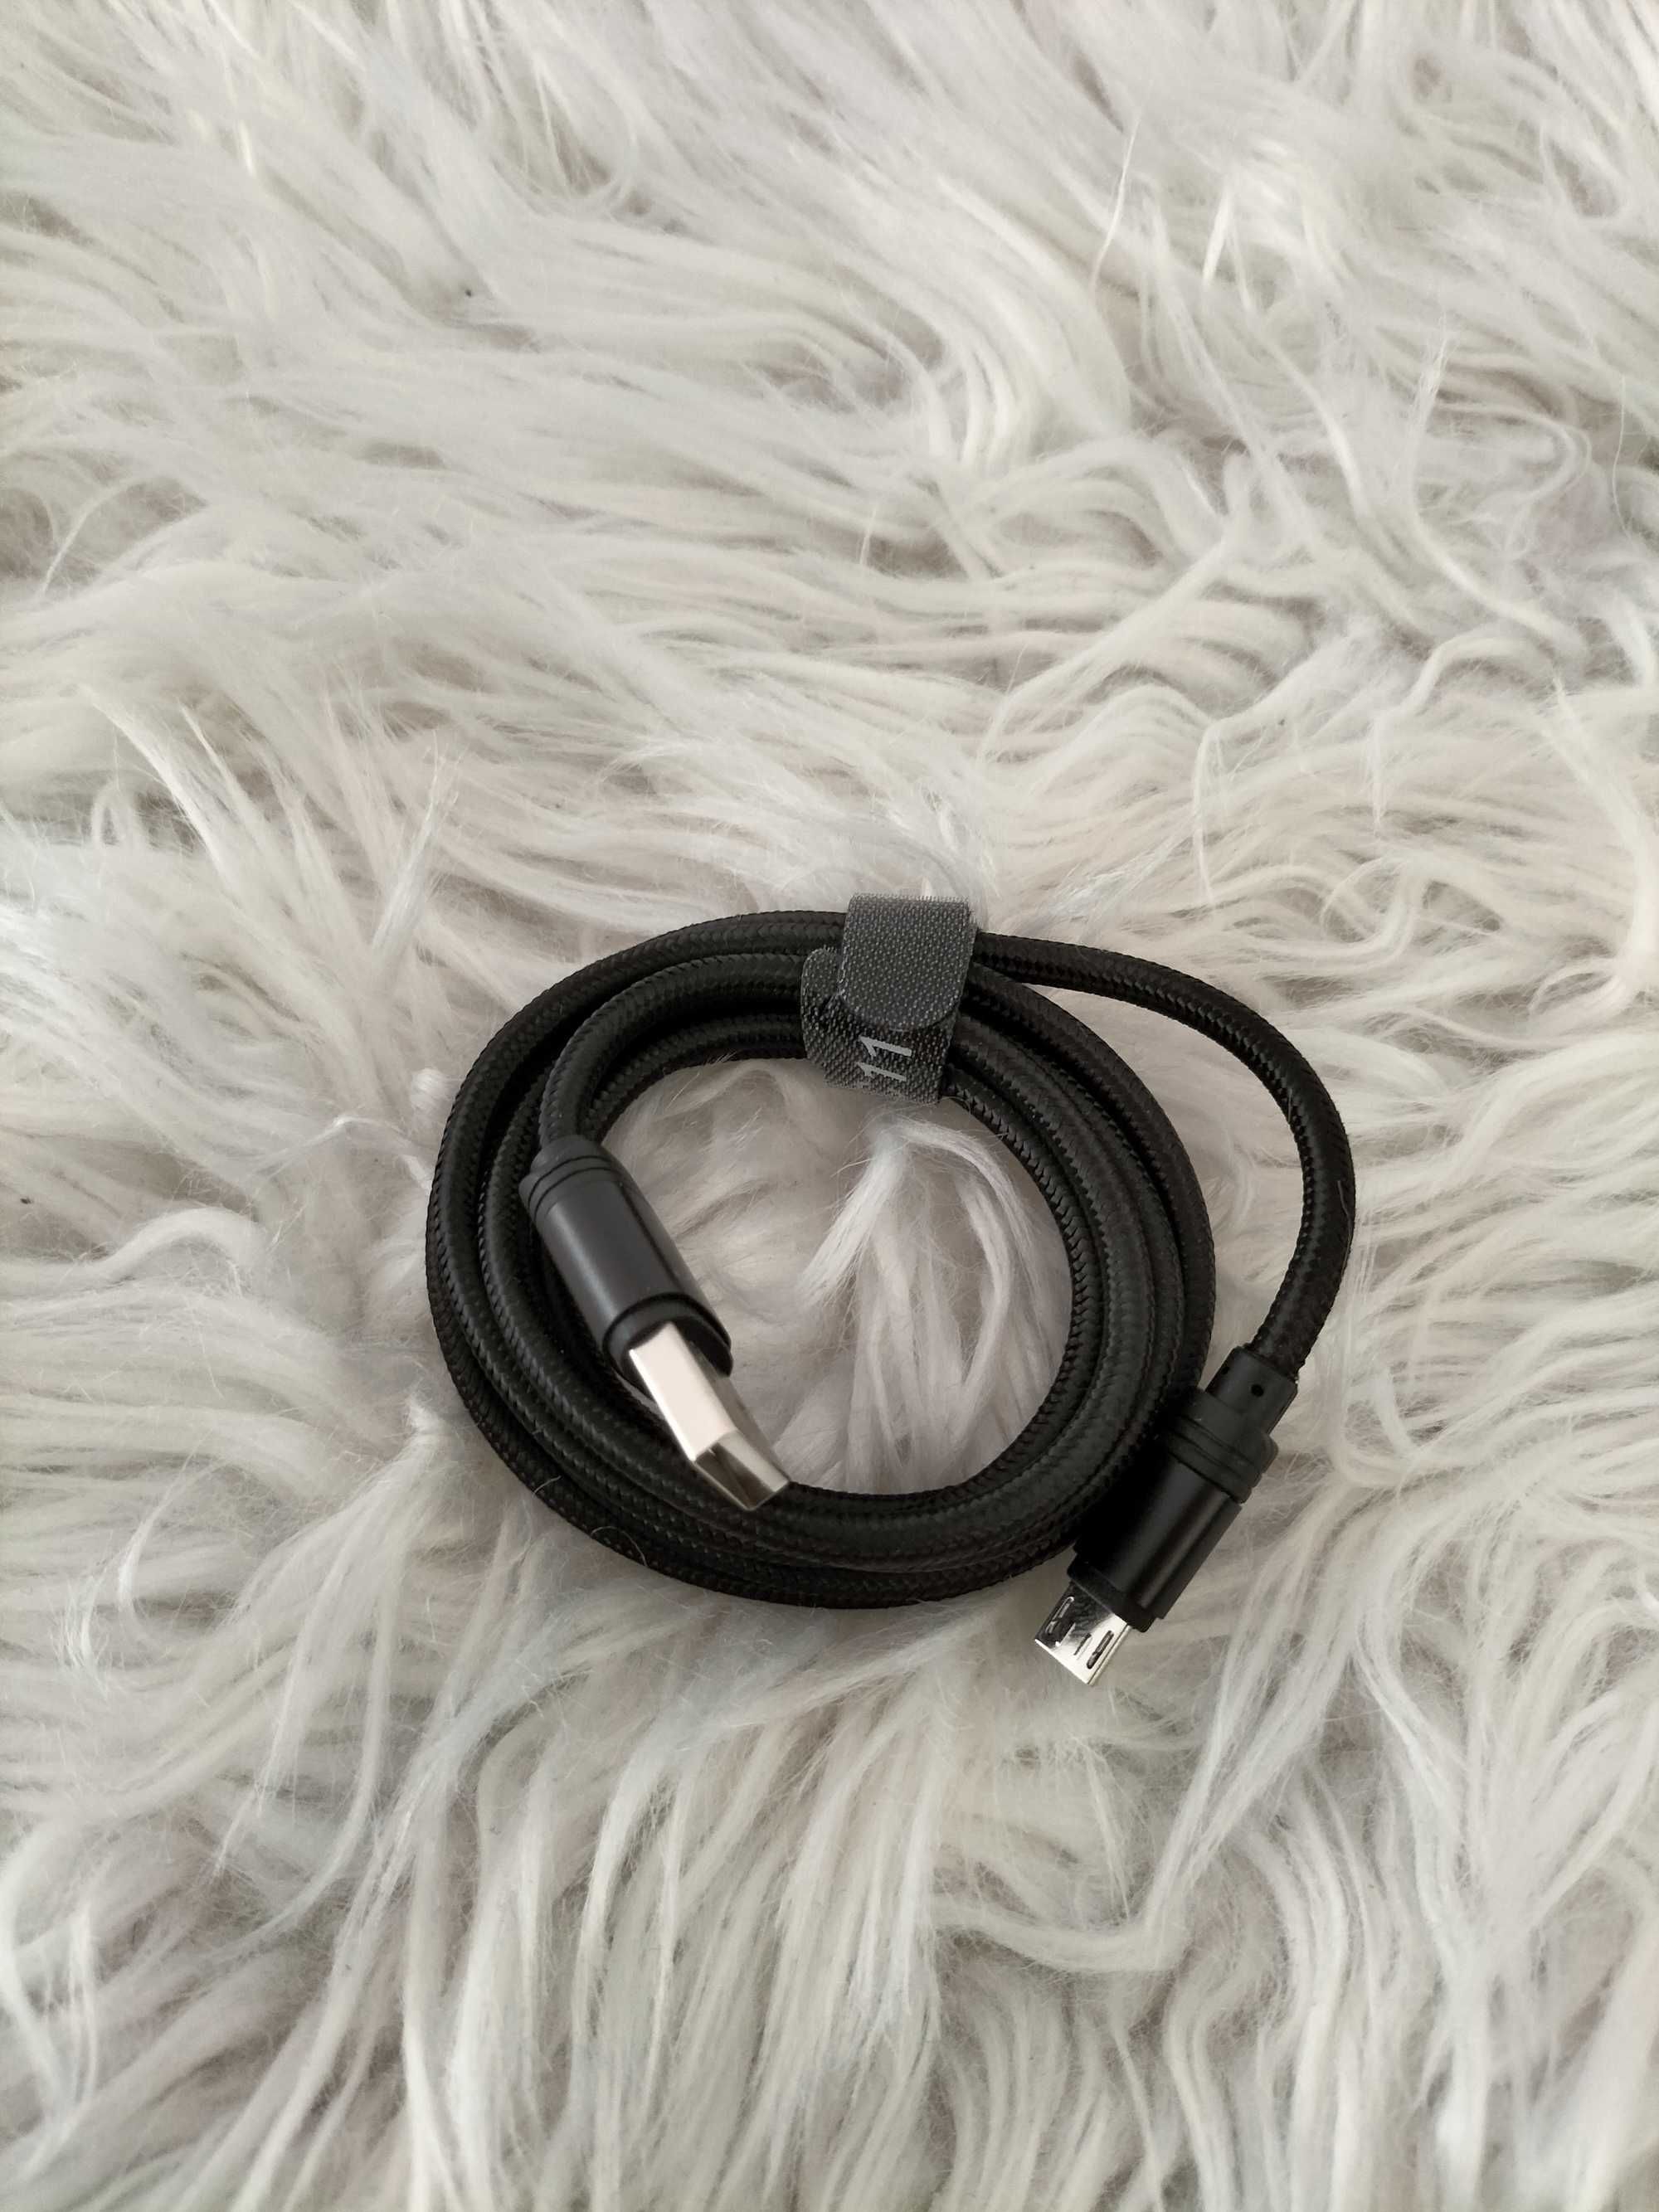 Kabel do ładowania Micro USB